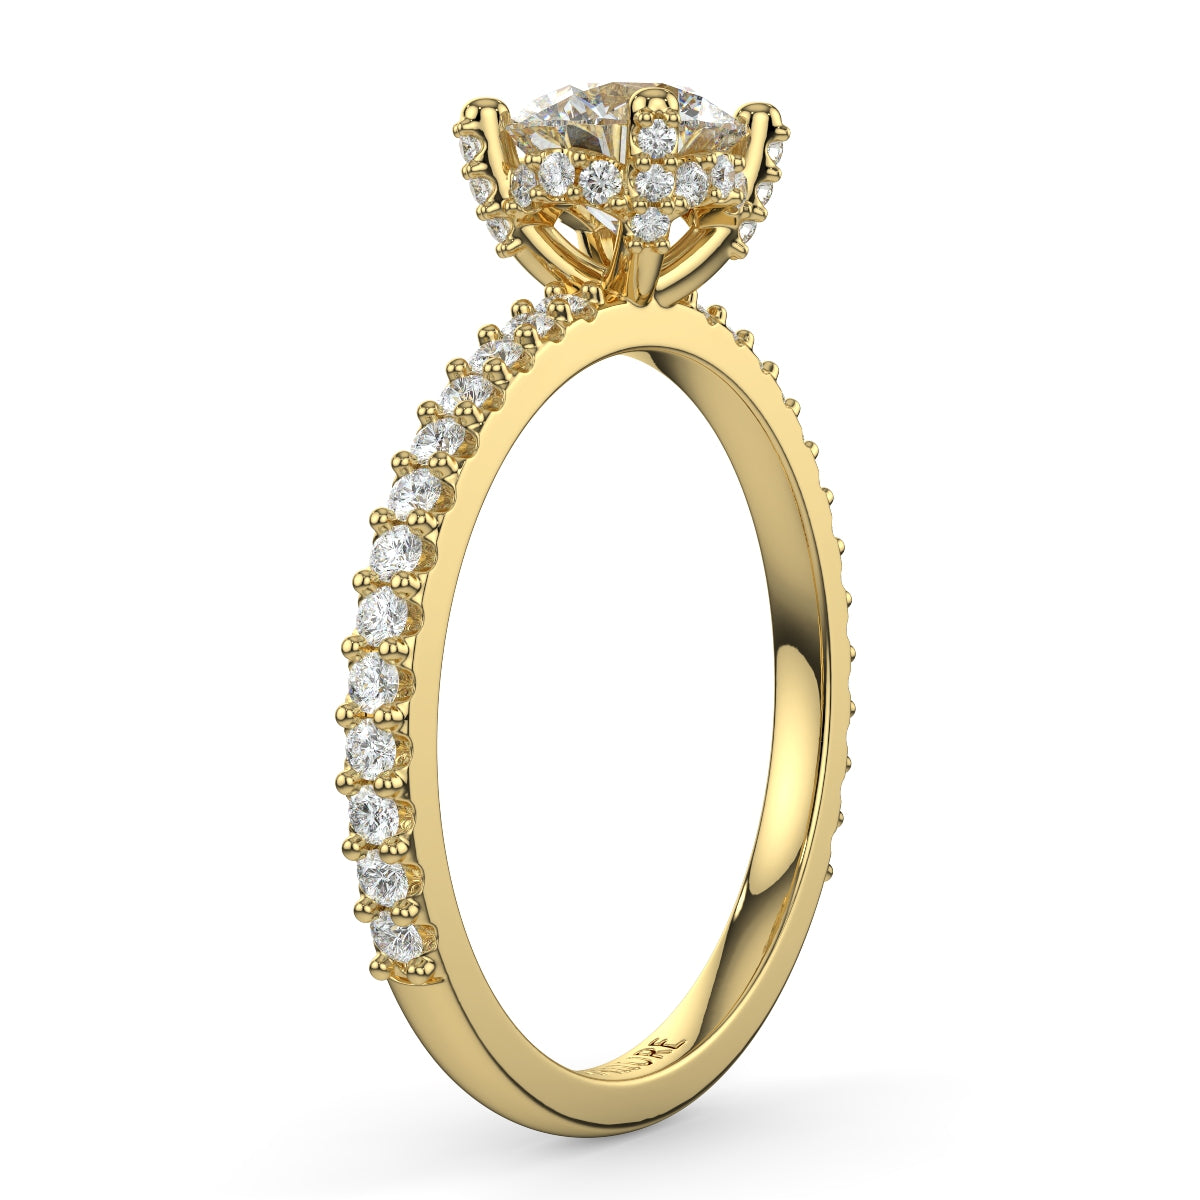 Diana パヴェリング ラウンドブリリアントカット | ラボグロウンダイヤモンド/ダイヤモンド 婚約指輪 – DIALLURE